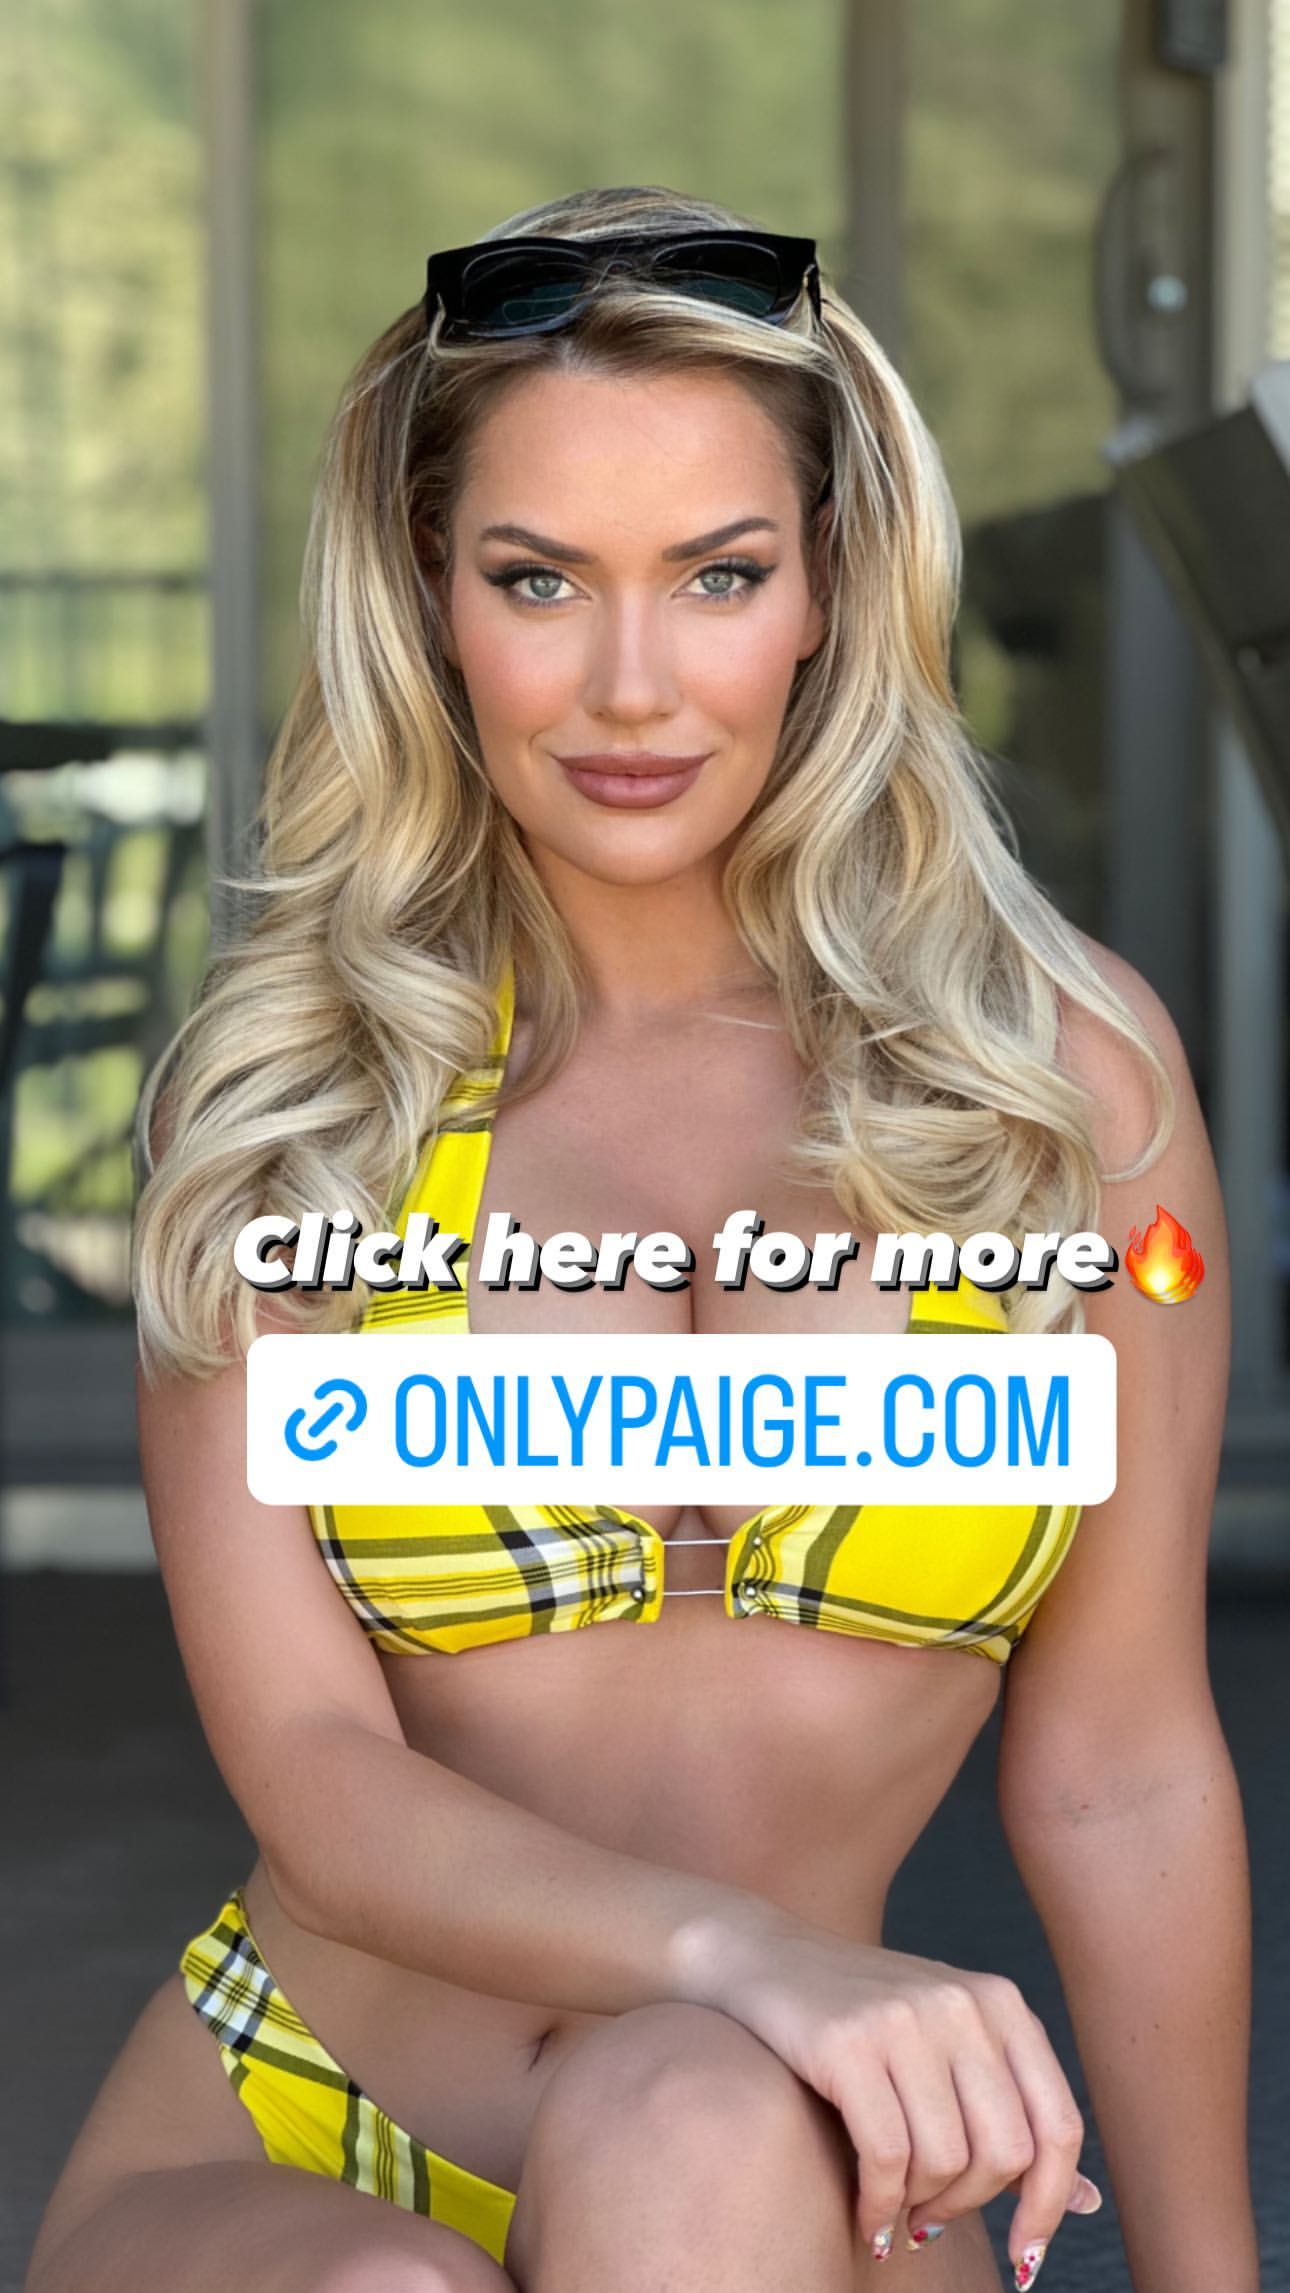 Photos n°3 : Paige Spiranac’s Sunglasses Giveaway Bikini Picture!